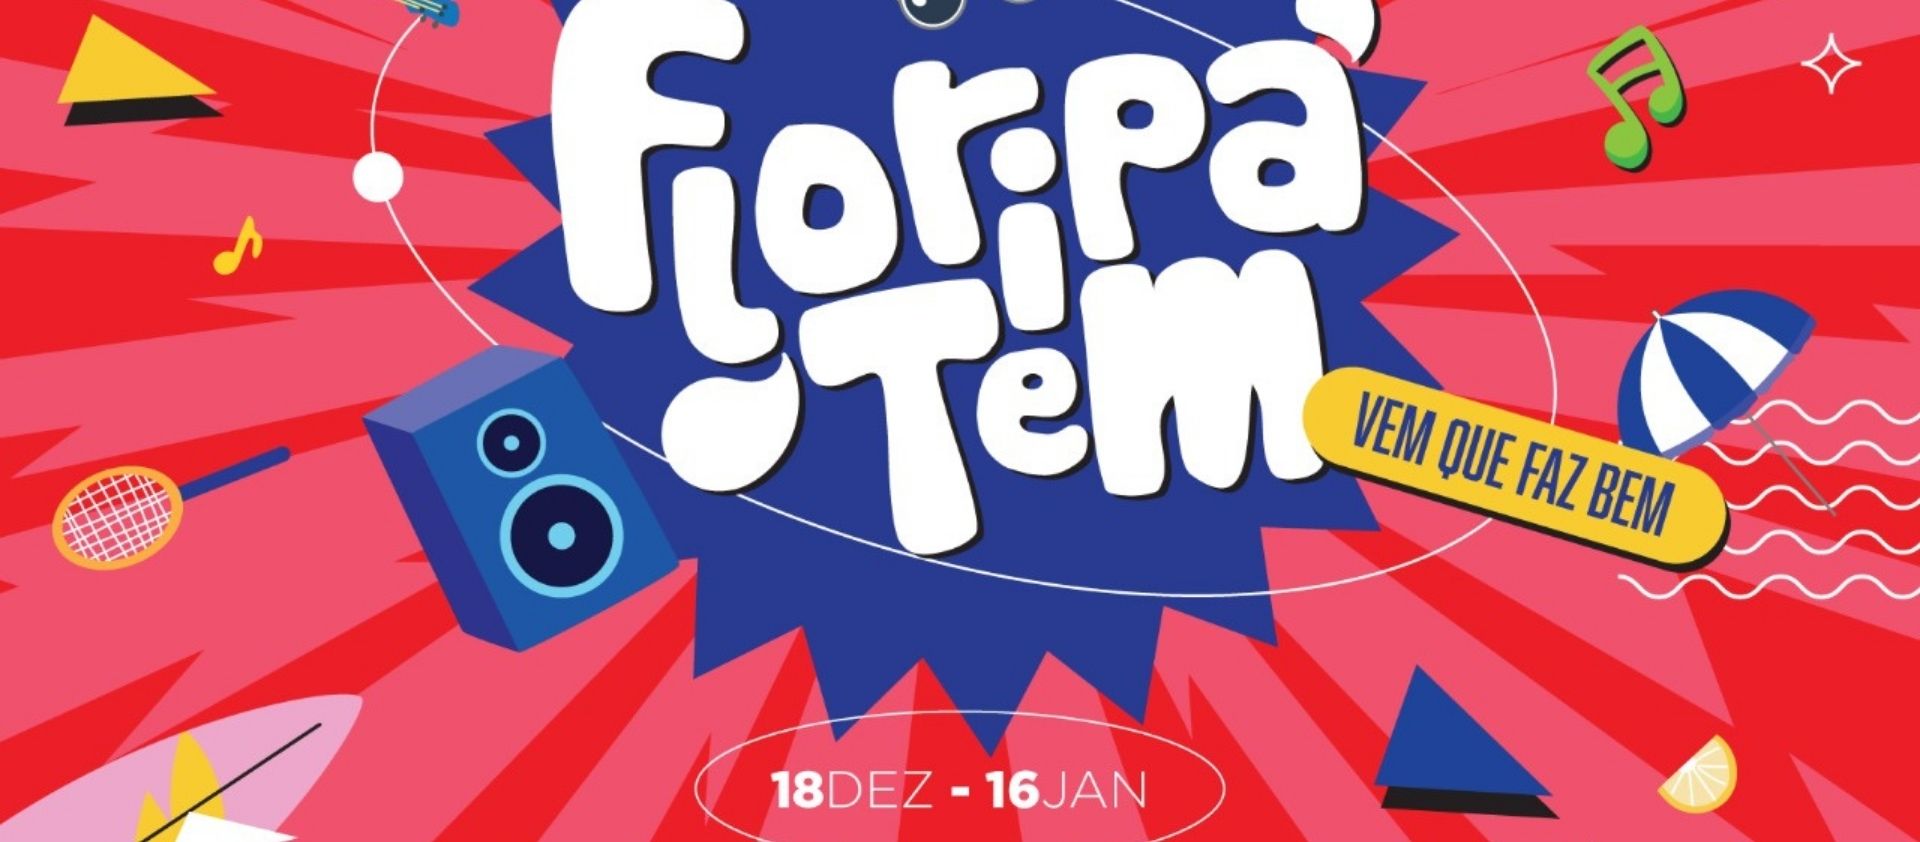 14º edição do Floripa Tem acontece até o dia 16 de janeiro